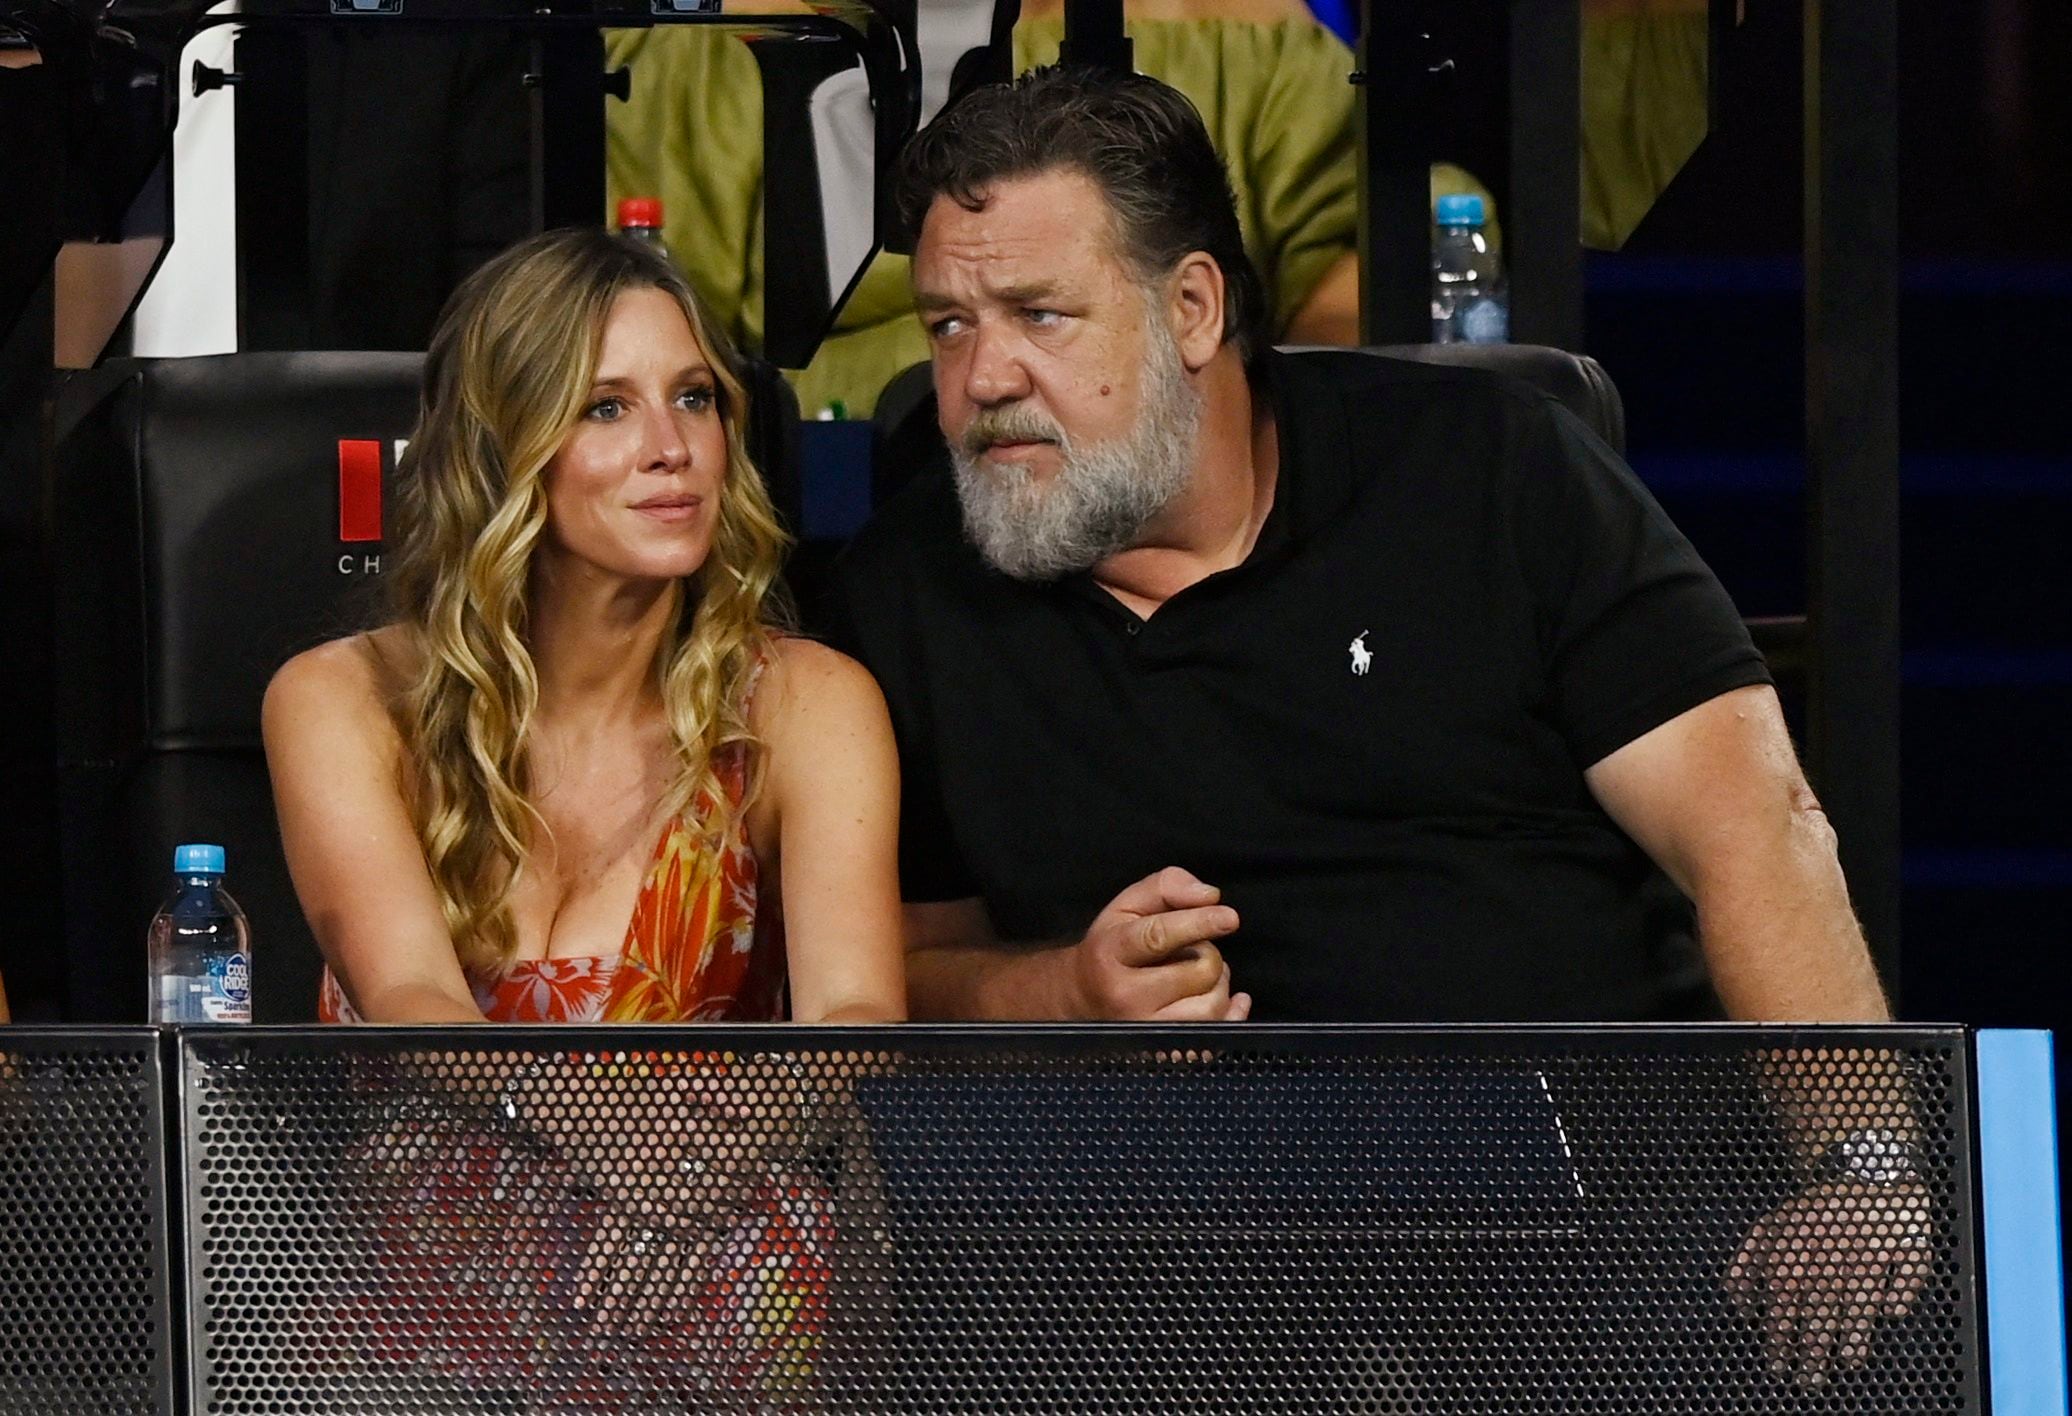  El actor Russell Crowe y su novia Britney Theriot mirando un partido de tenis ((REUTERS/Jaimi Joy)